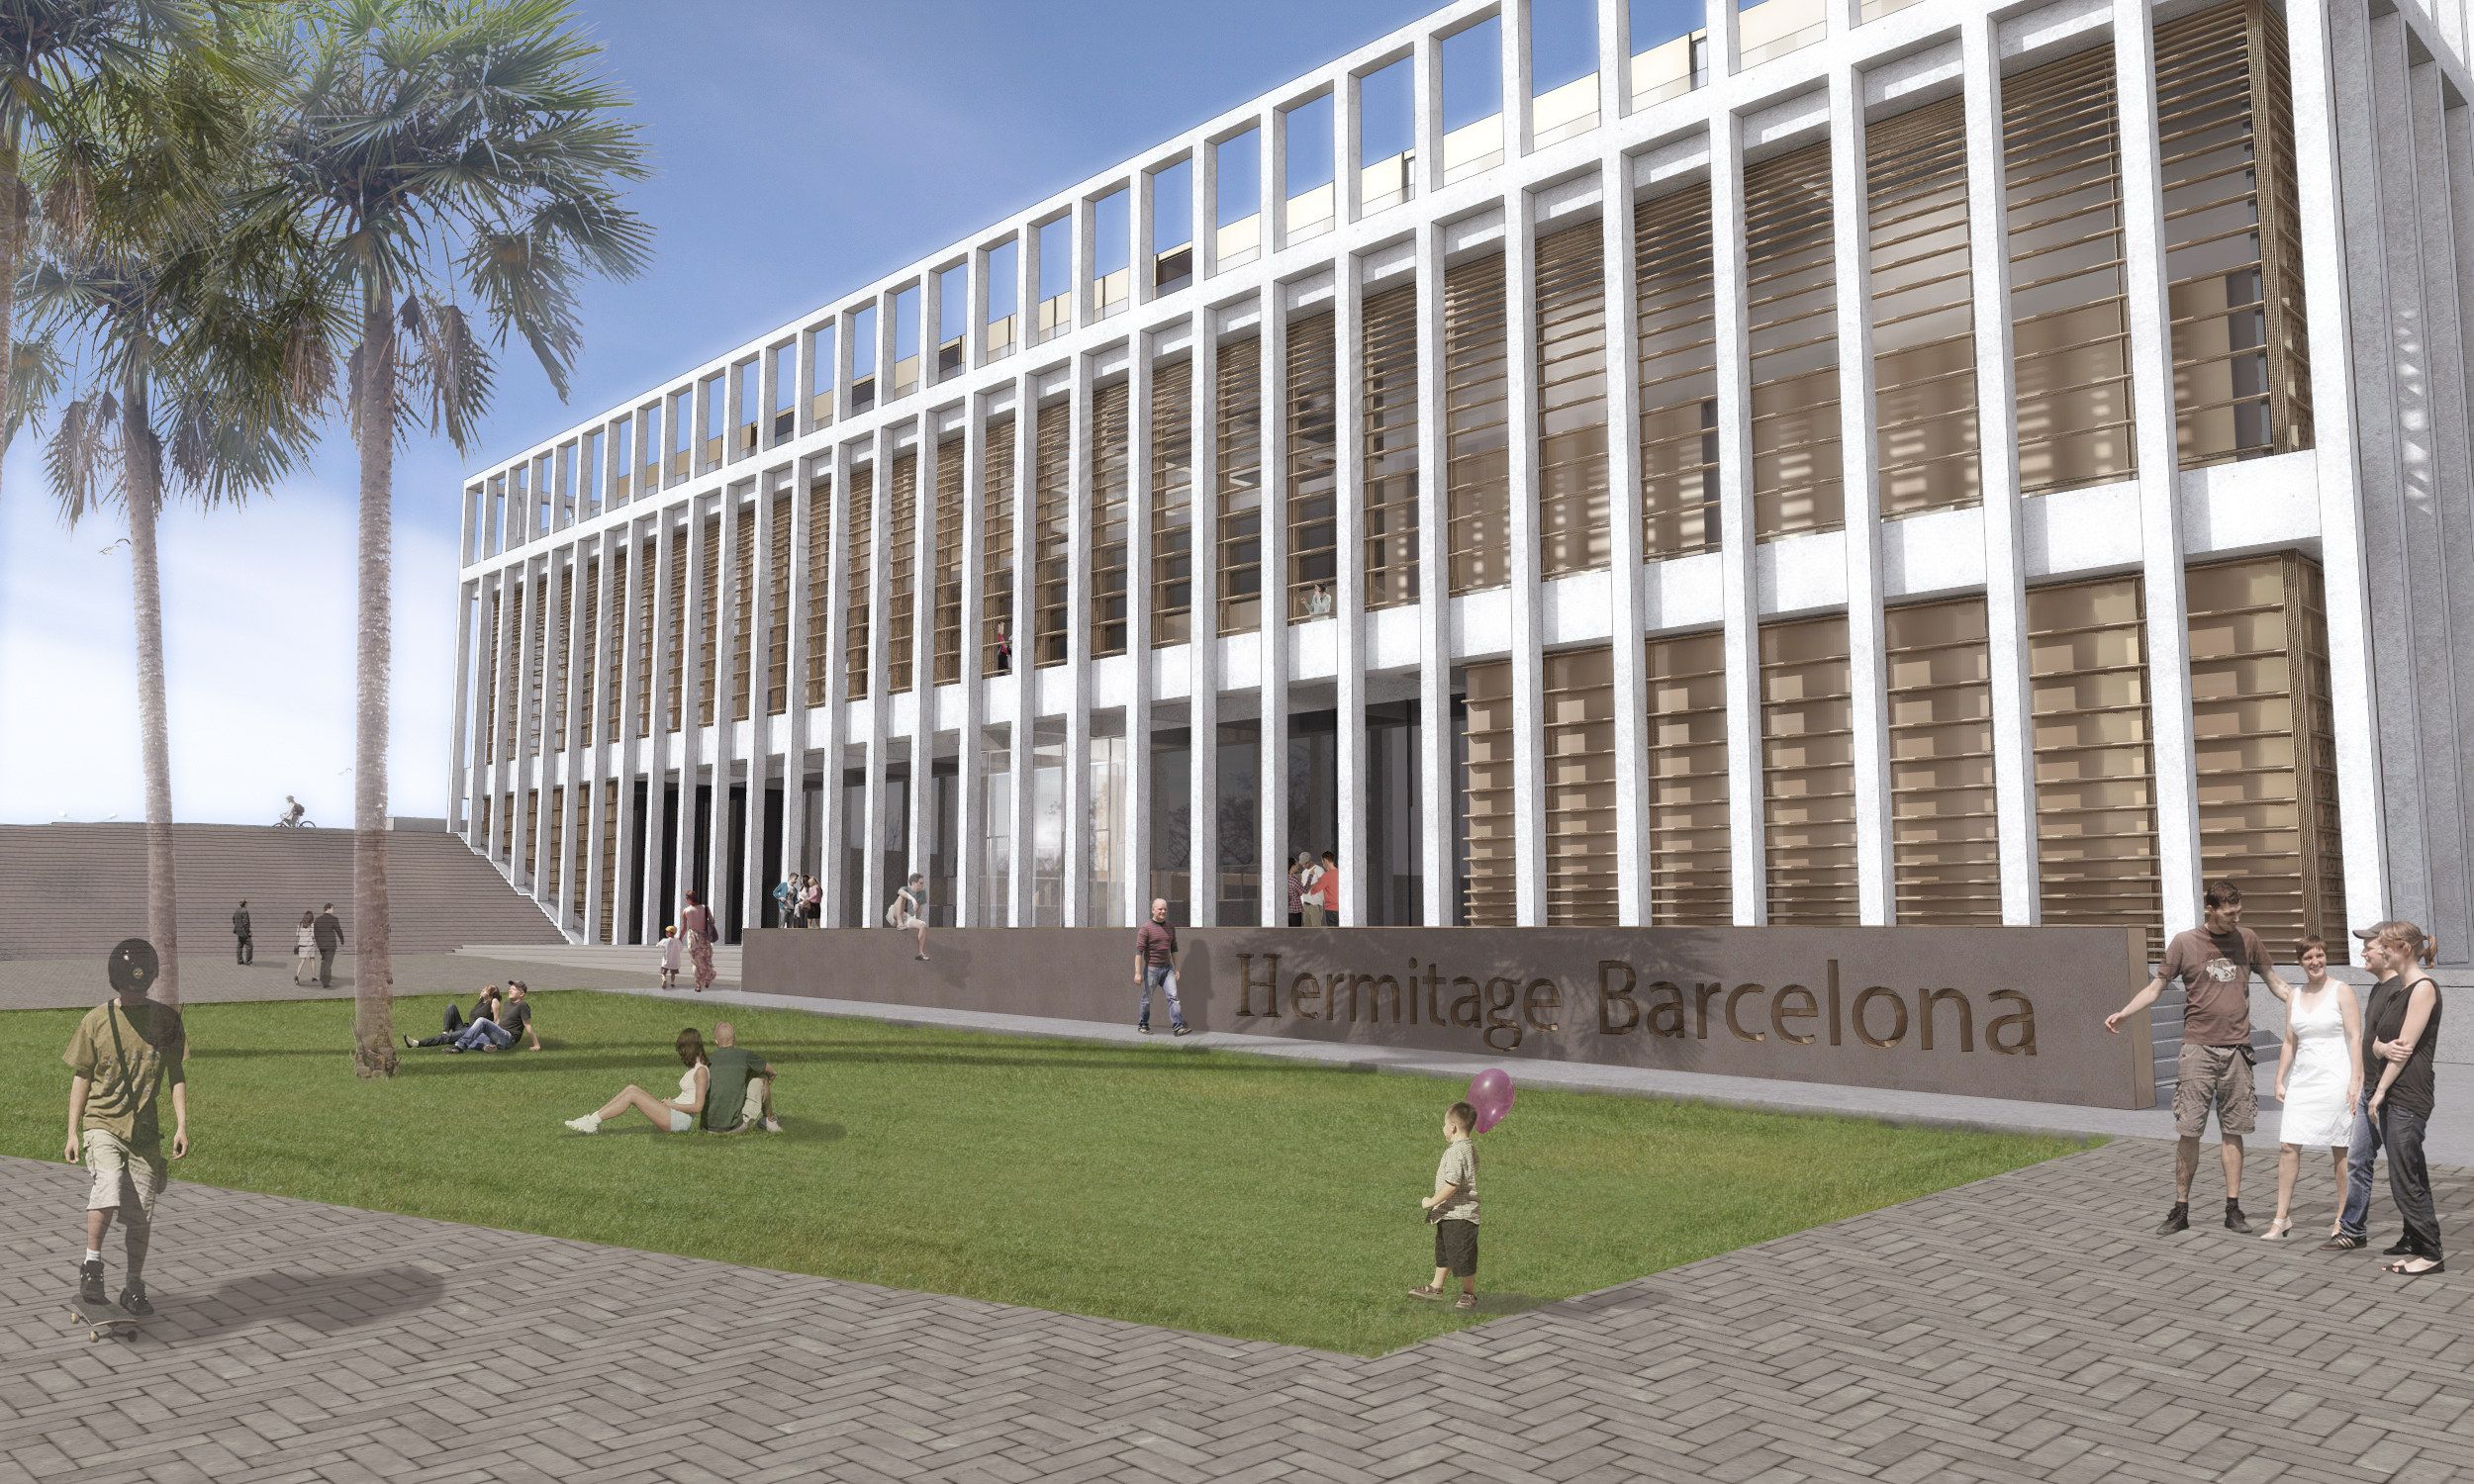 La promesa d’obrir el 2019 revifa el projecte de l’Hermitage Barcelona